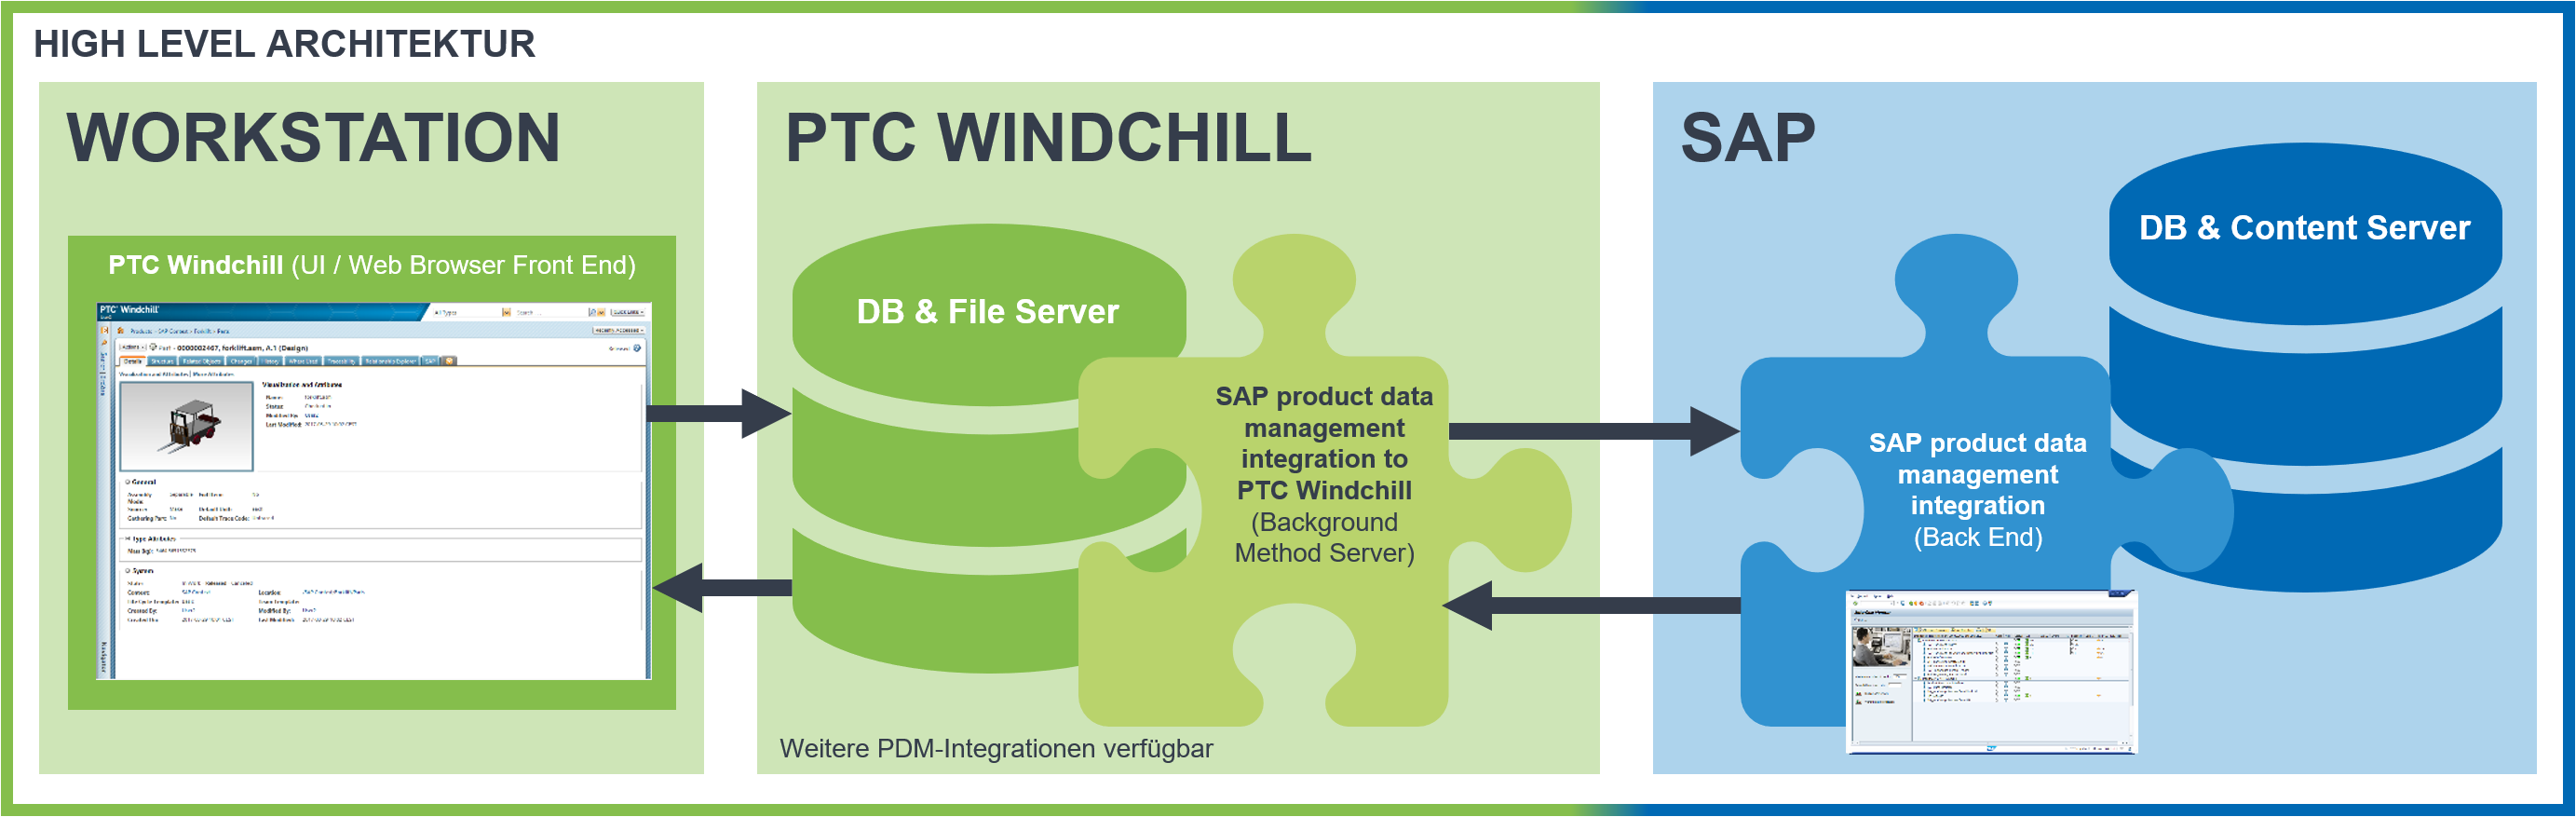 [Translate to Englisch:] Grafik zur High-Level Architektur der SAP PDM integration to PTC Windchill